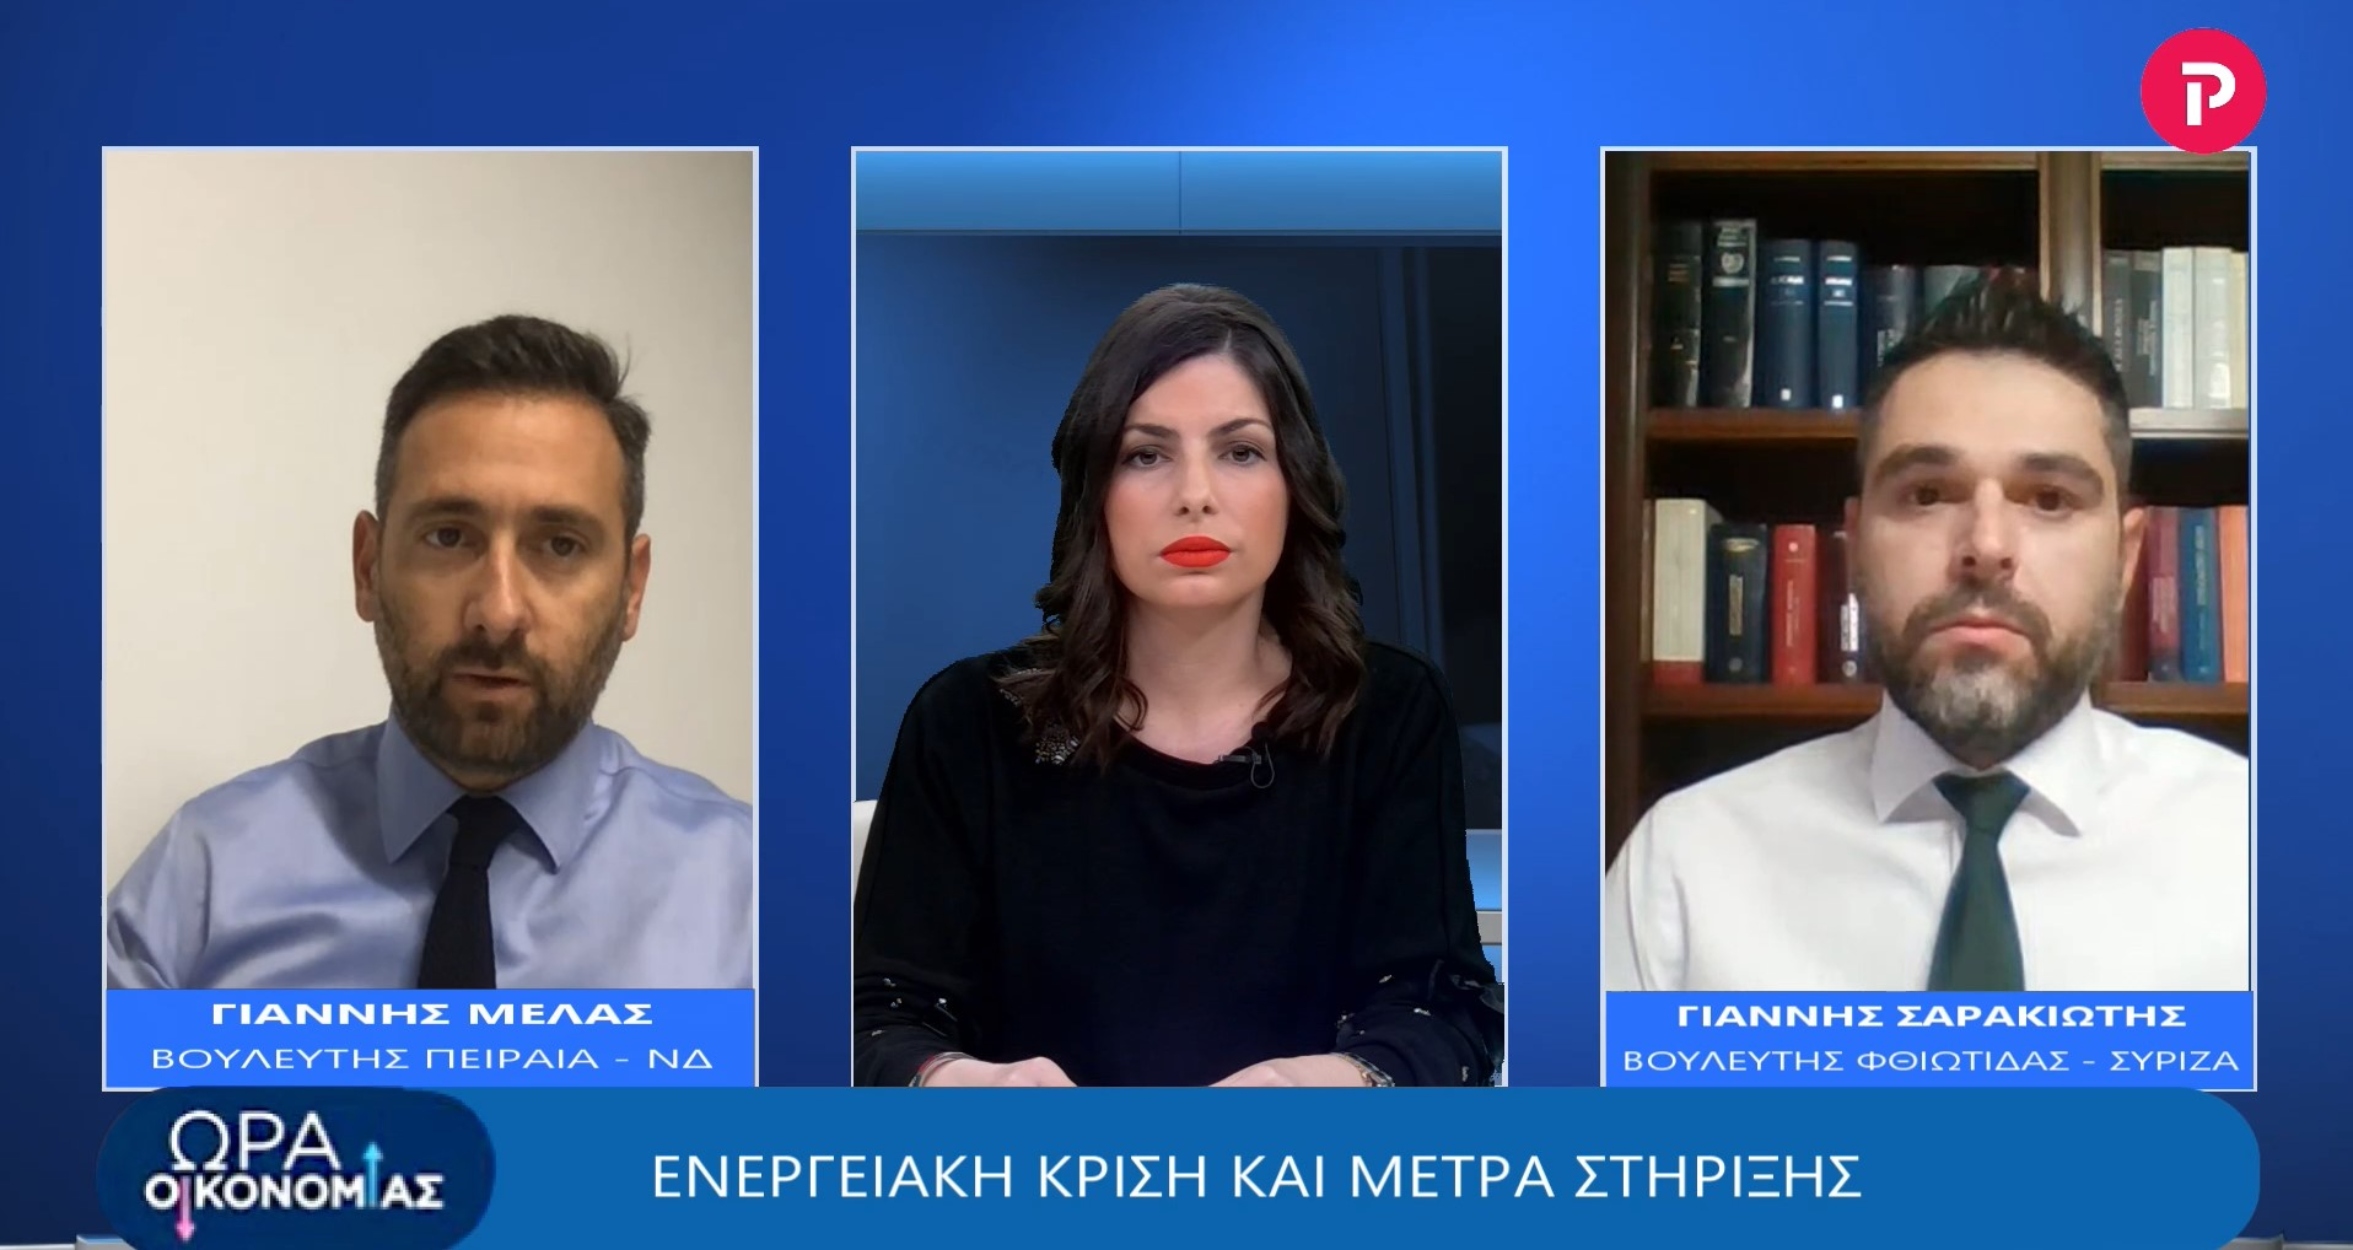 Μελάς - Σαρακιώτης στο pagenews.gr: Ενεργειακή κρίση και μέτρα στήριξης